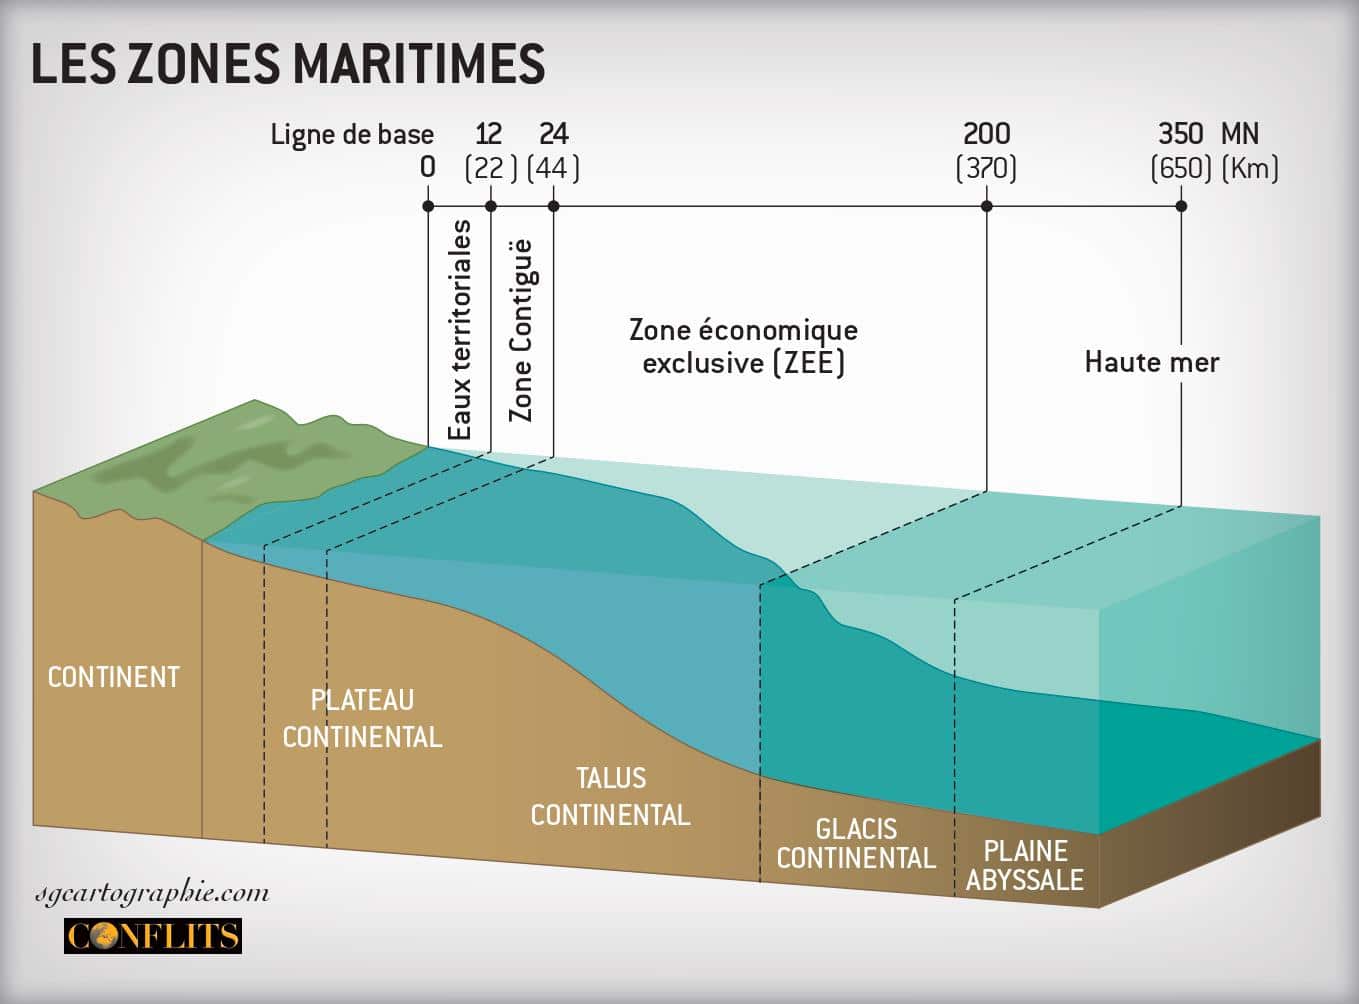 Aires marines protégées : comment mieux préserver les écosystèmes marins ?